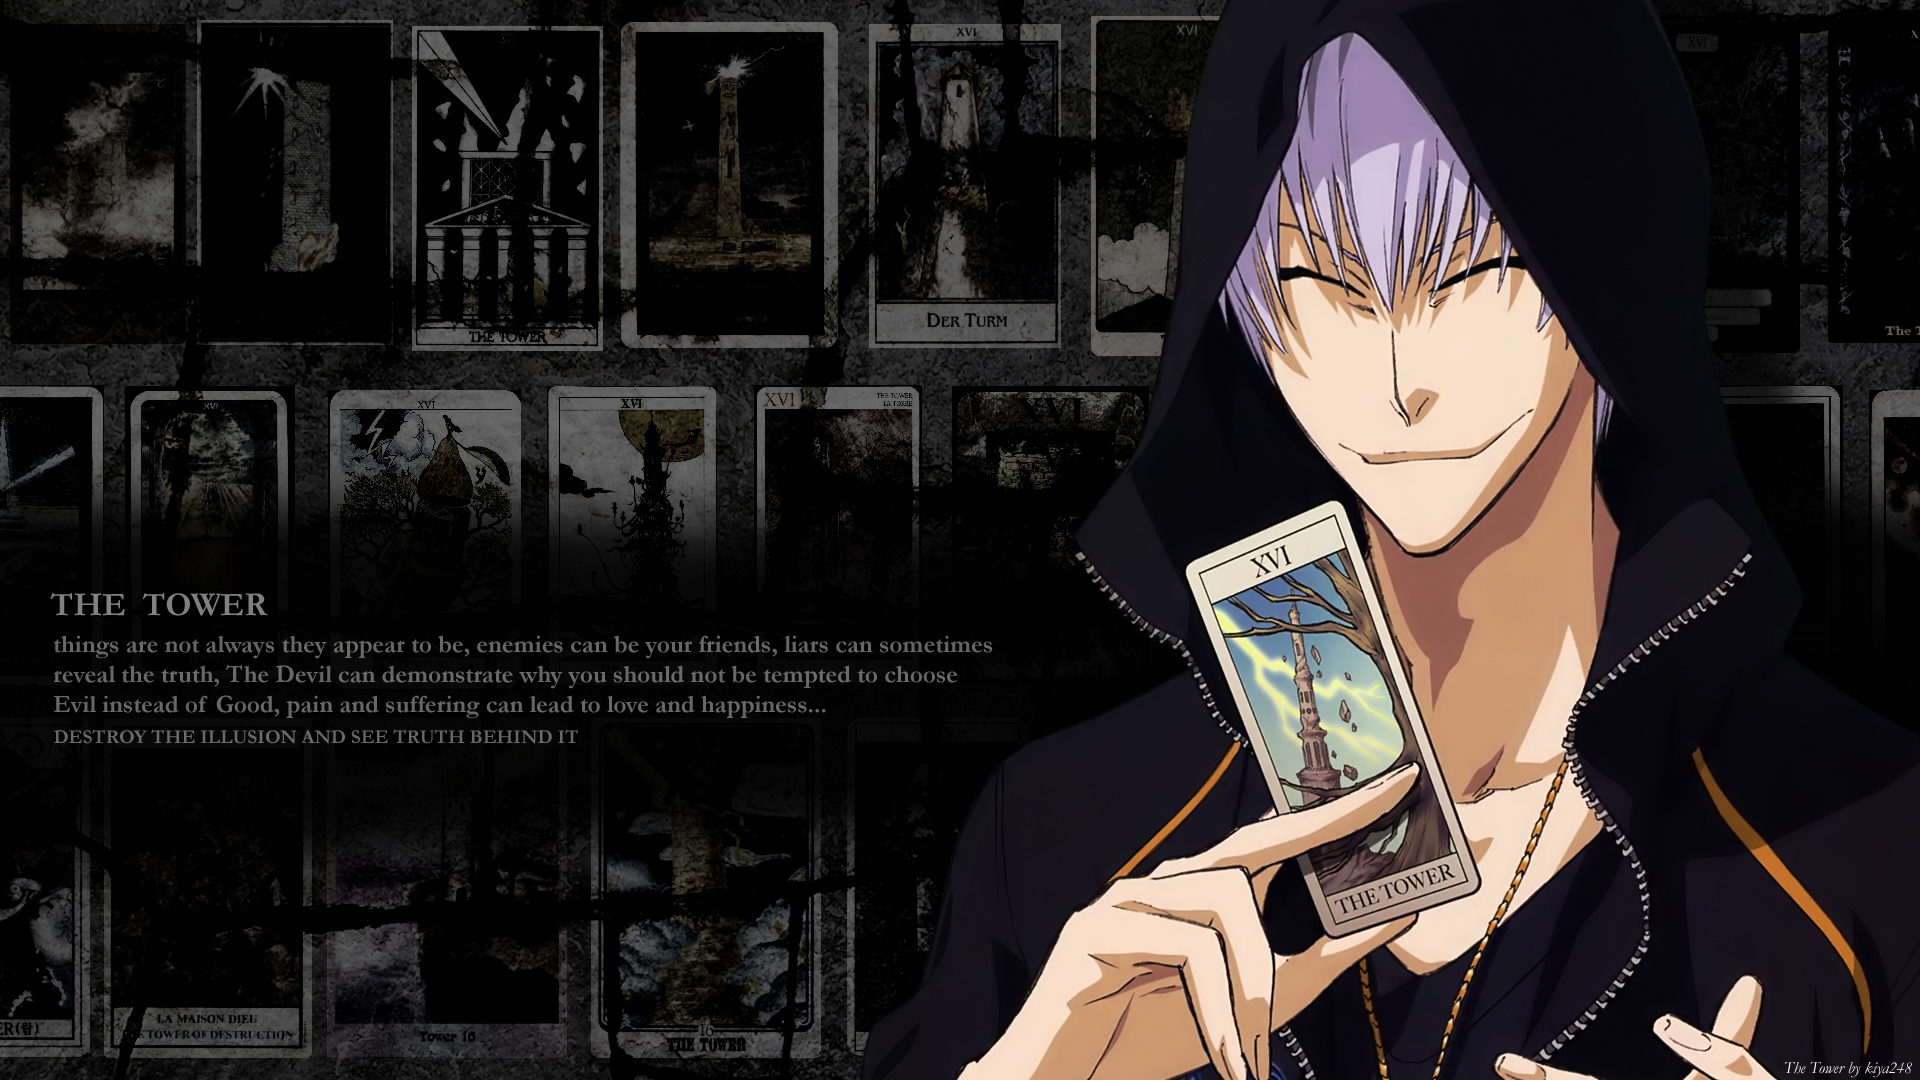 gin wallpaper,anime,cabello negro,cg artwork,juegos,captura de pantalla